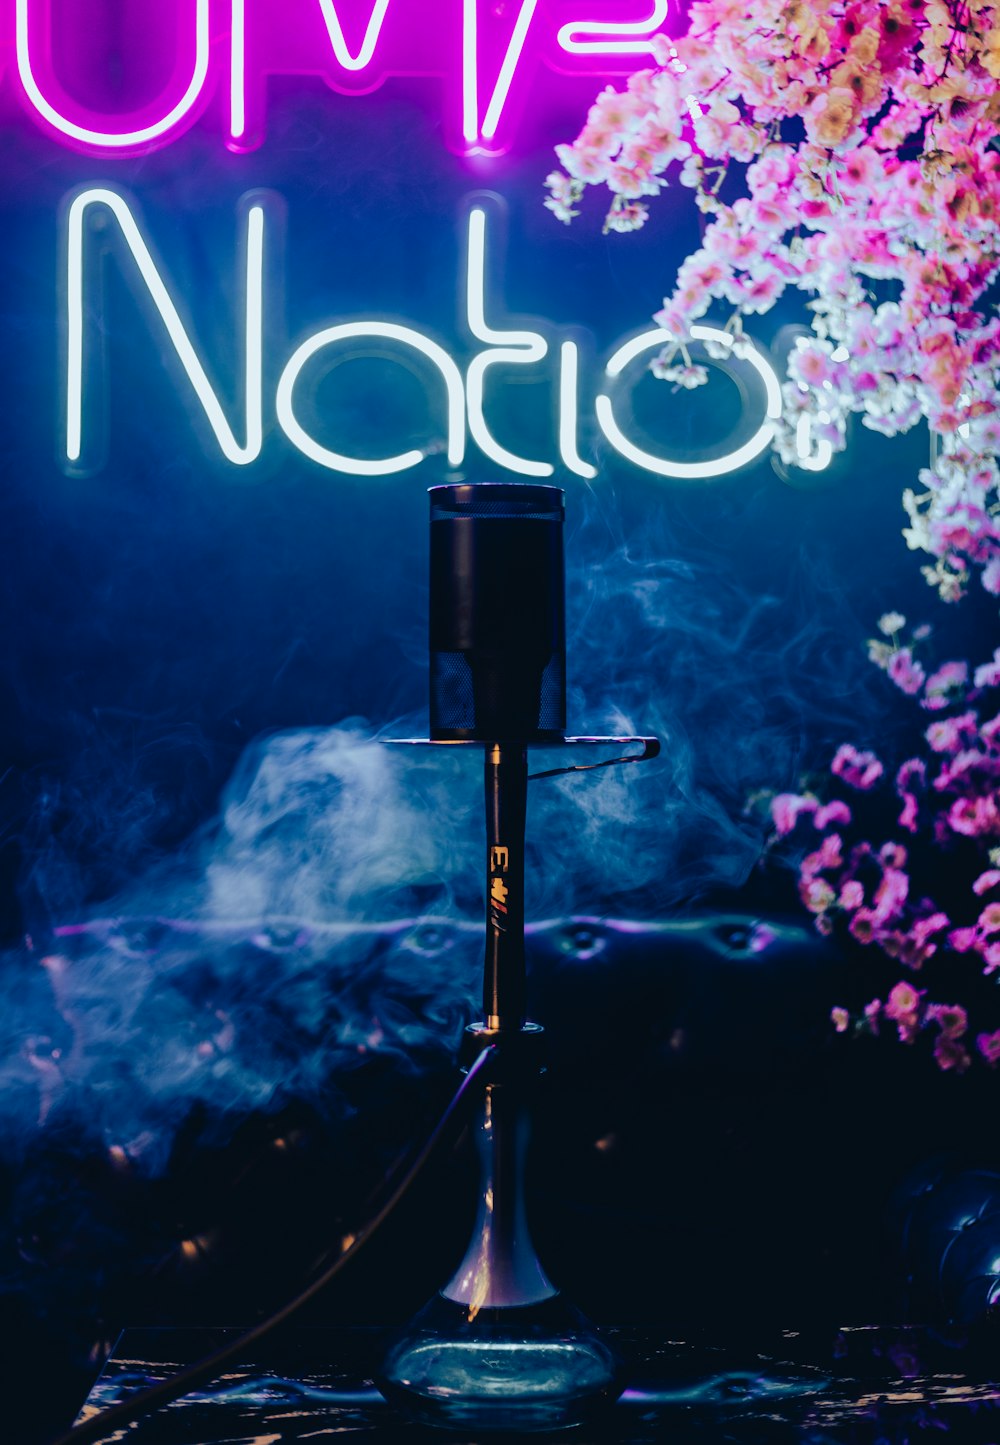 eine Leuchtreklame mit der Aufschrift "Live Nation" neben einem Schornstein